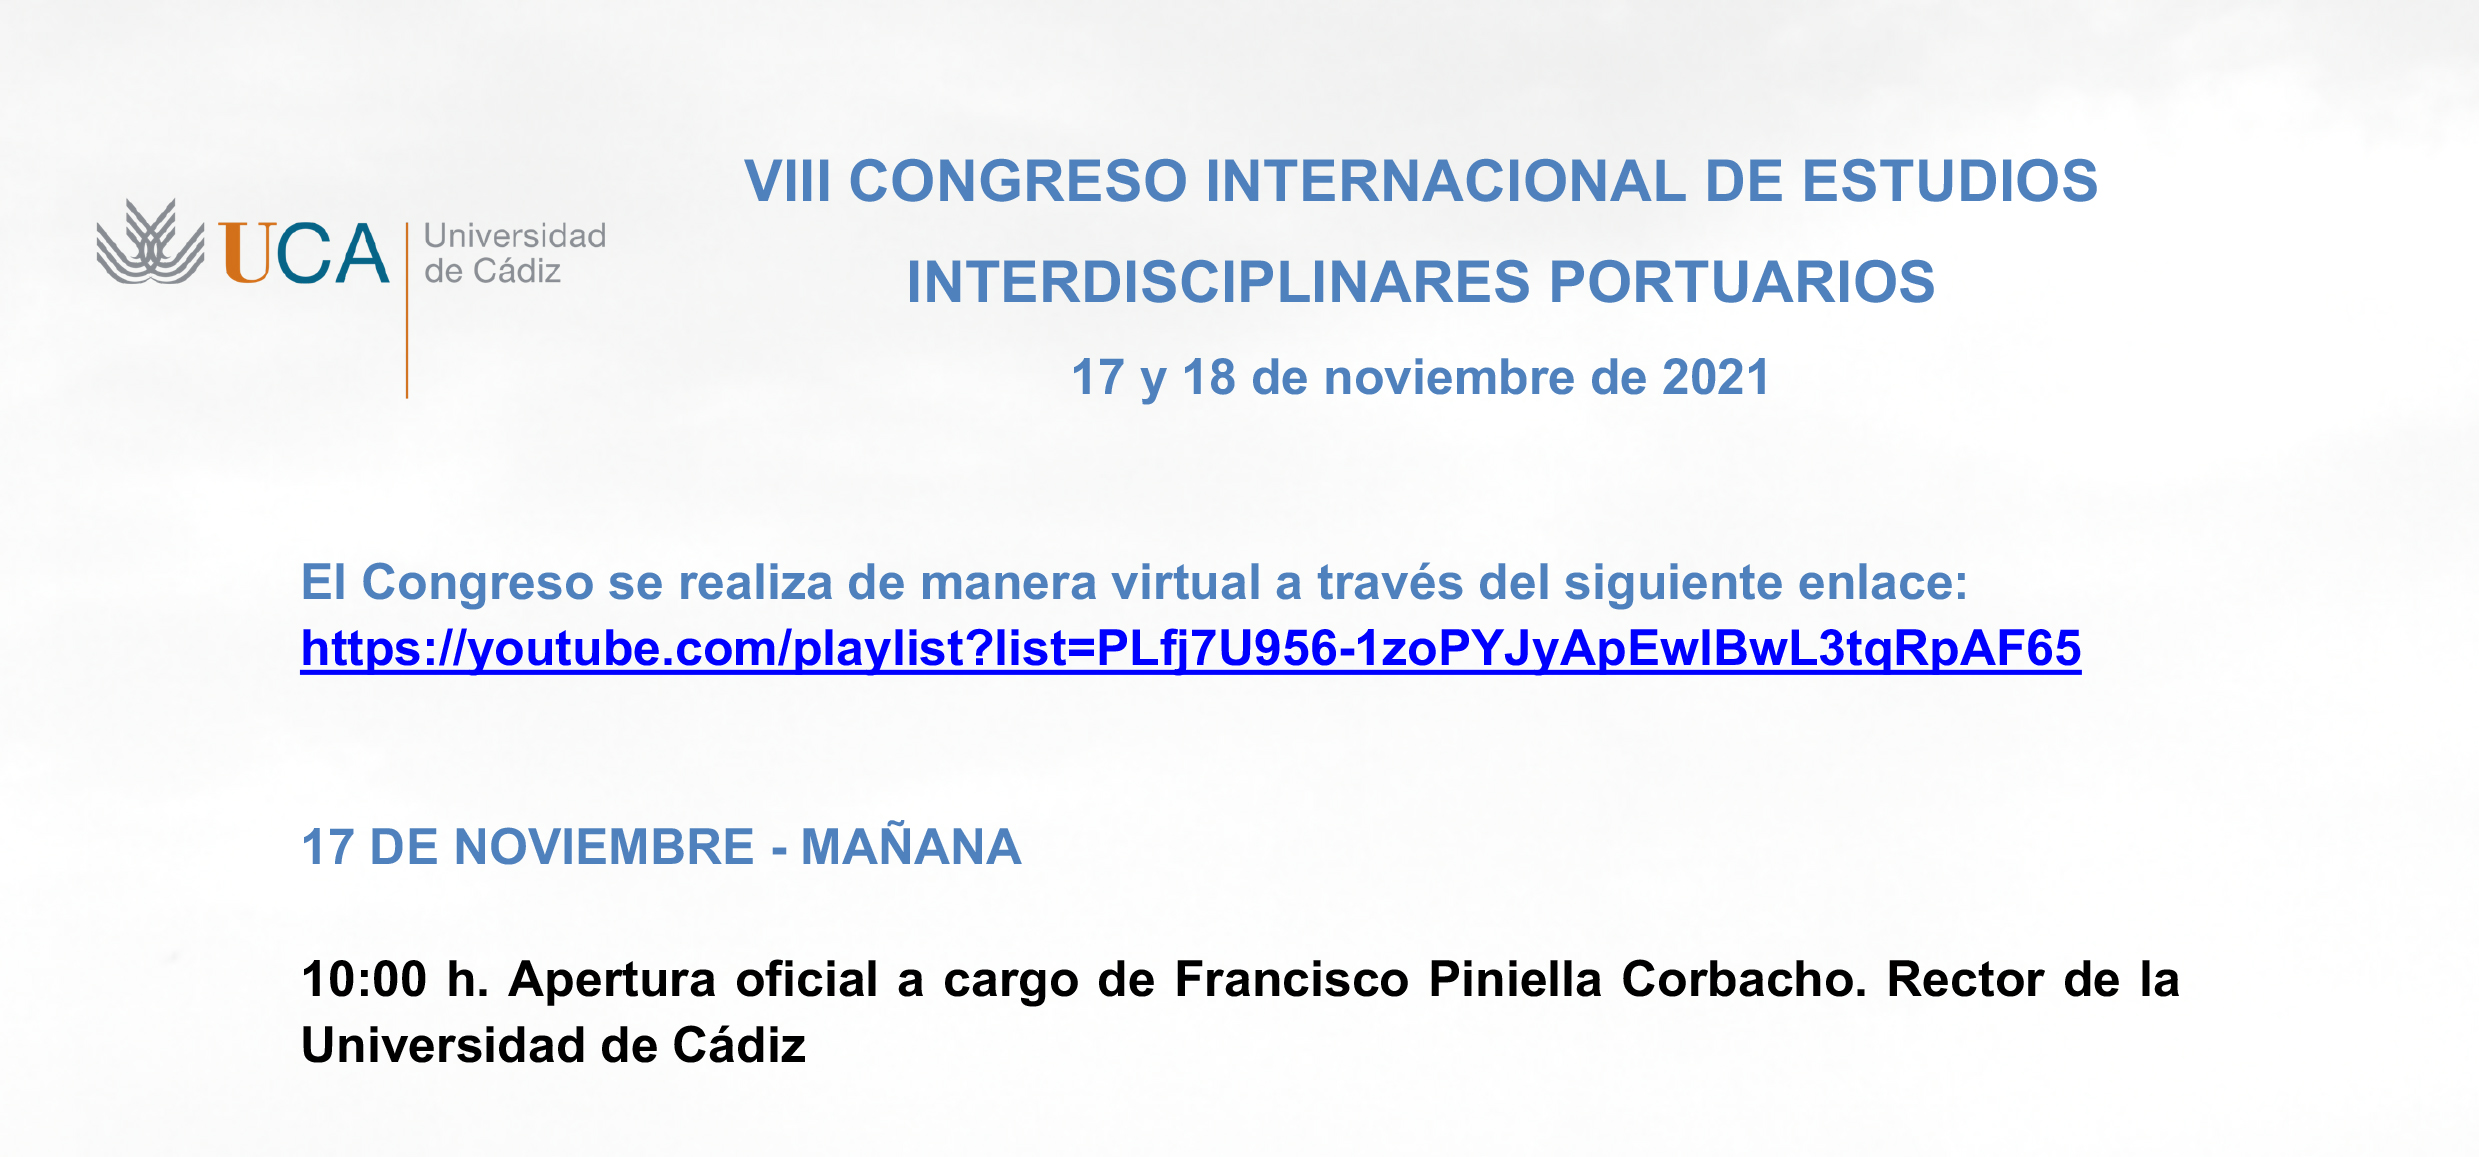 VIII Congreso Internacional de Estudios Interdisciplinares Portuarios